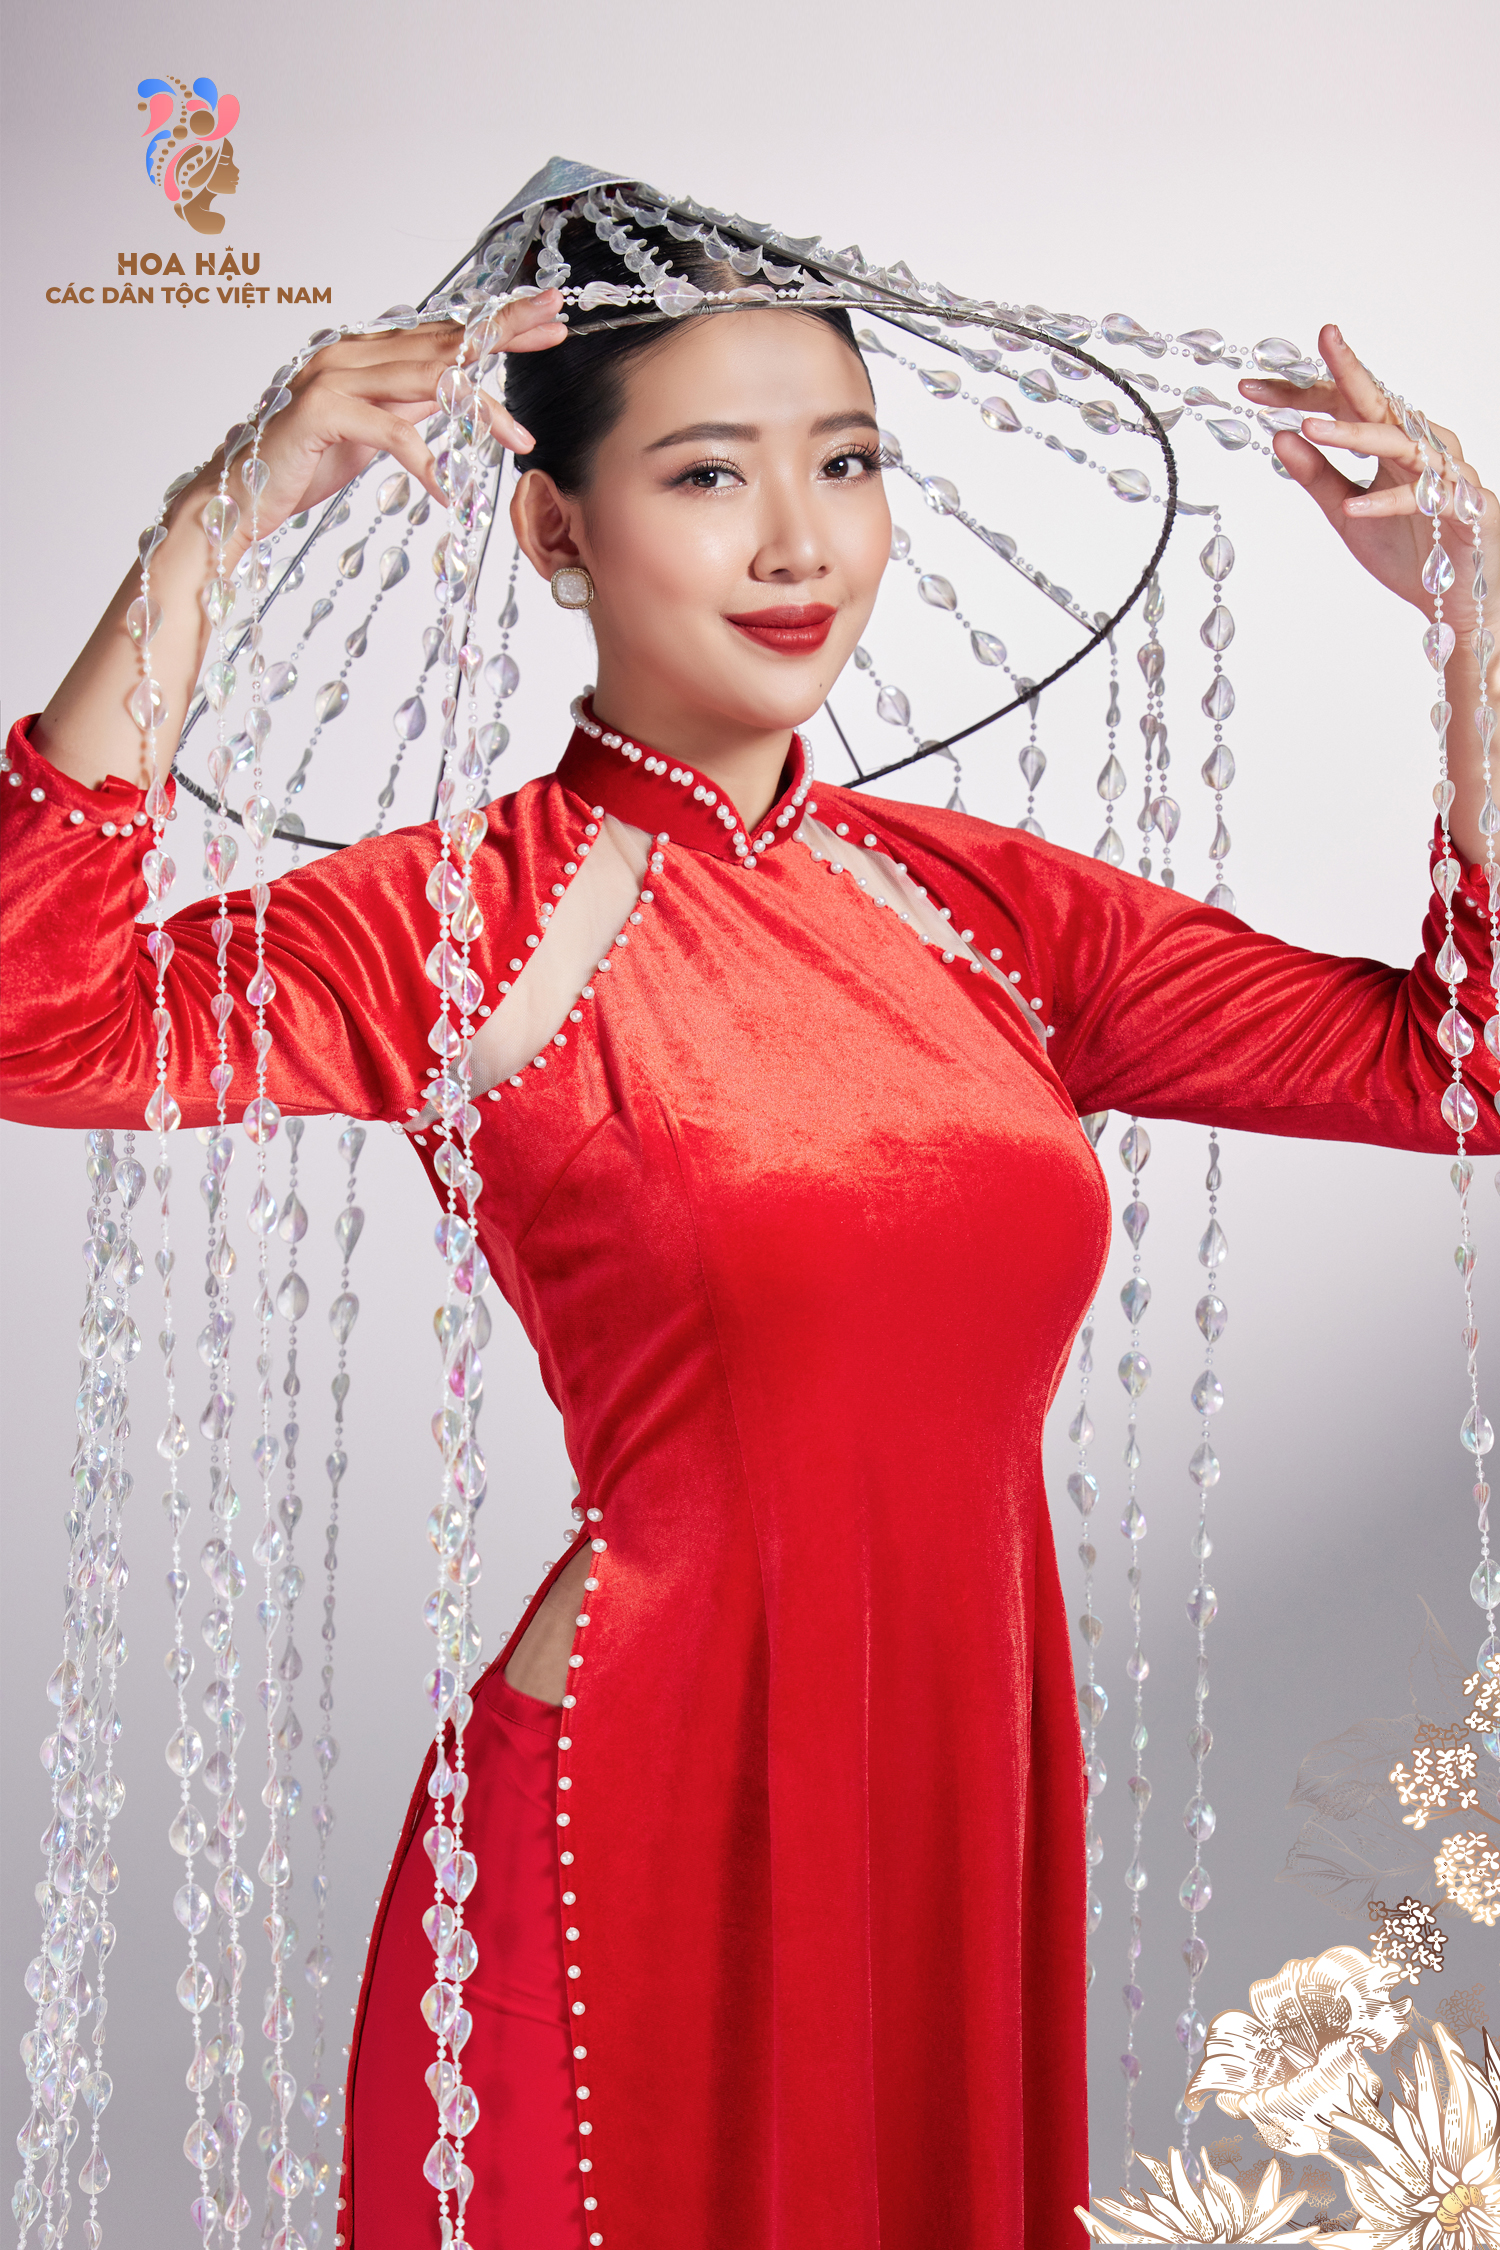 30 thí sinh Hoa hậu các dân tộc Việt Nam duyên dáng trong trang phục truyền thống - Ảnh 2.